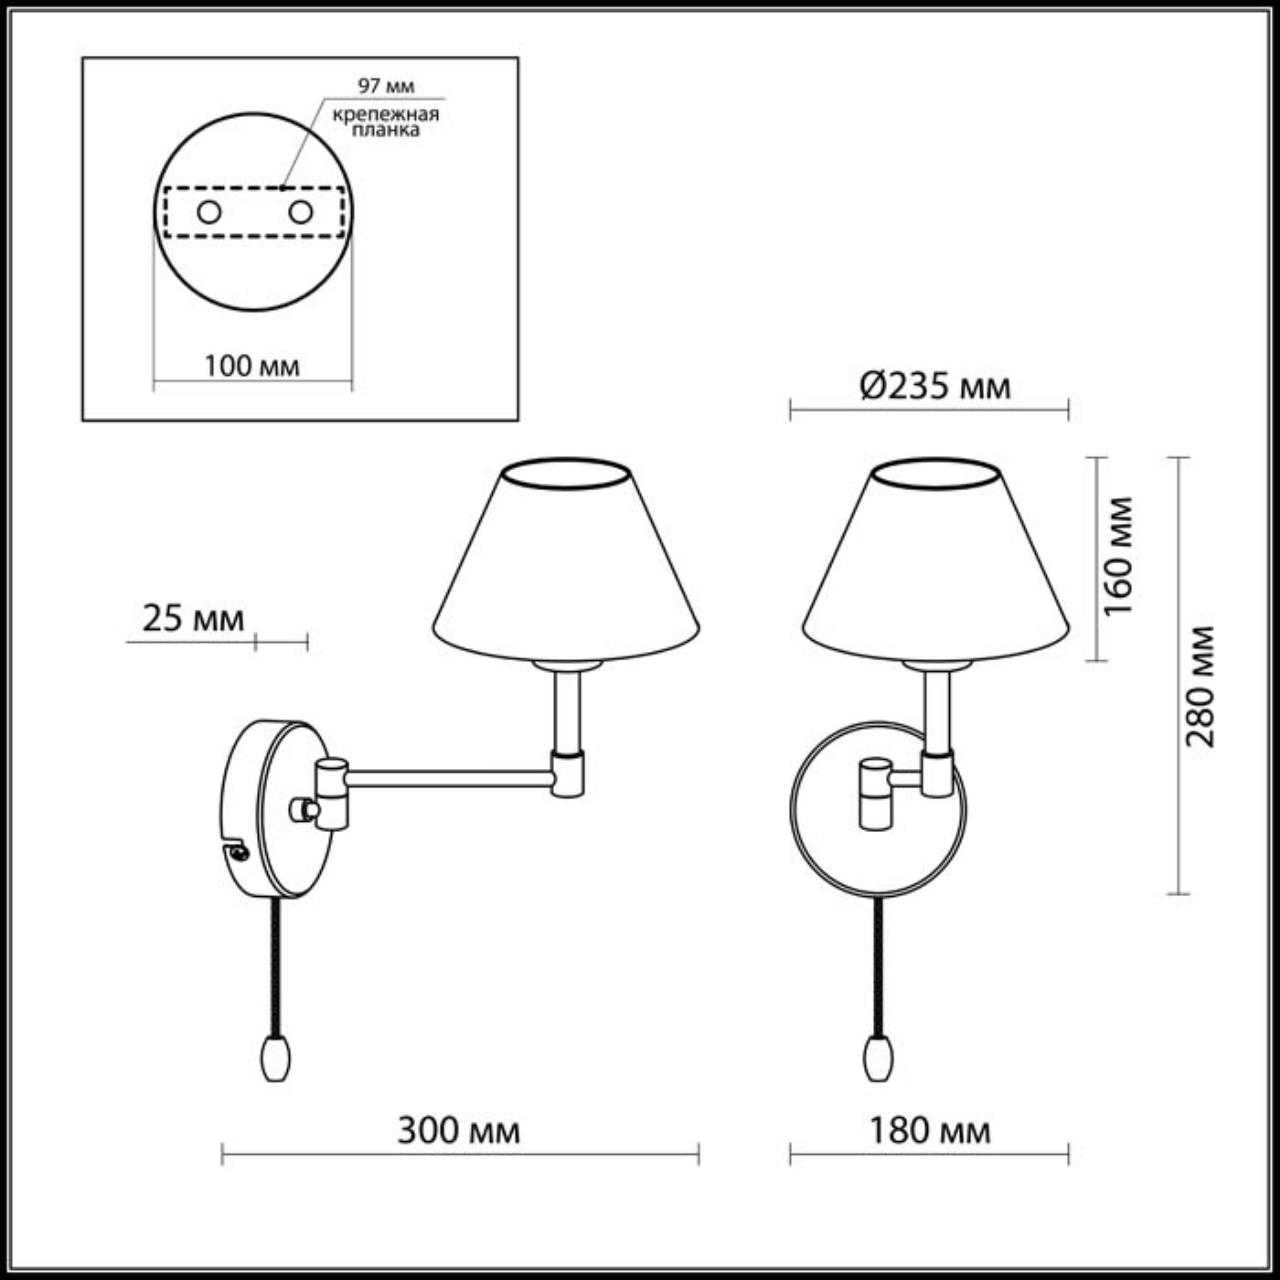 Как подключить бра с выключателем шнурком: настенный светильник веревочный, схема подключения, с цепочкой